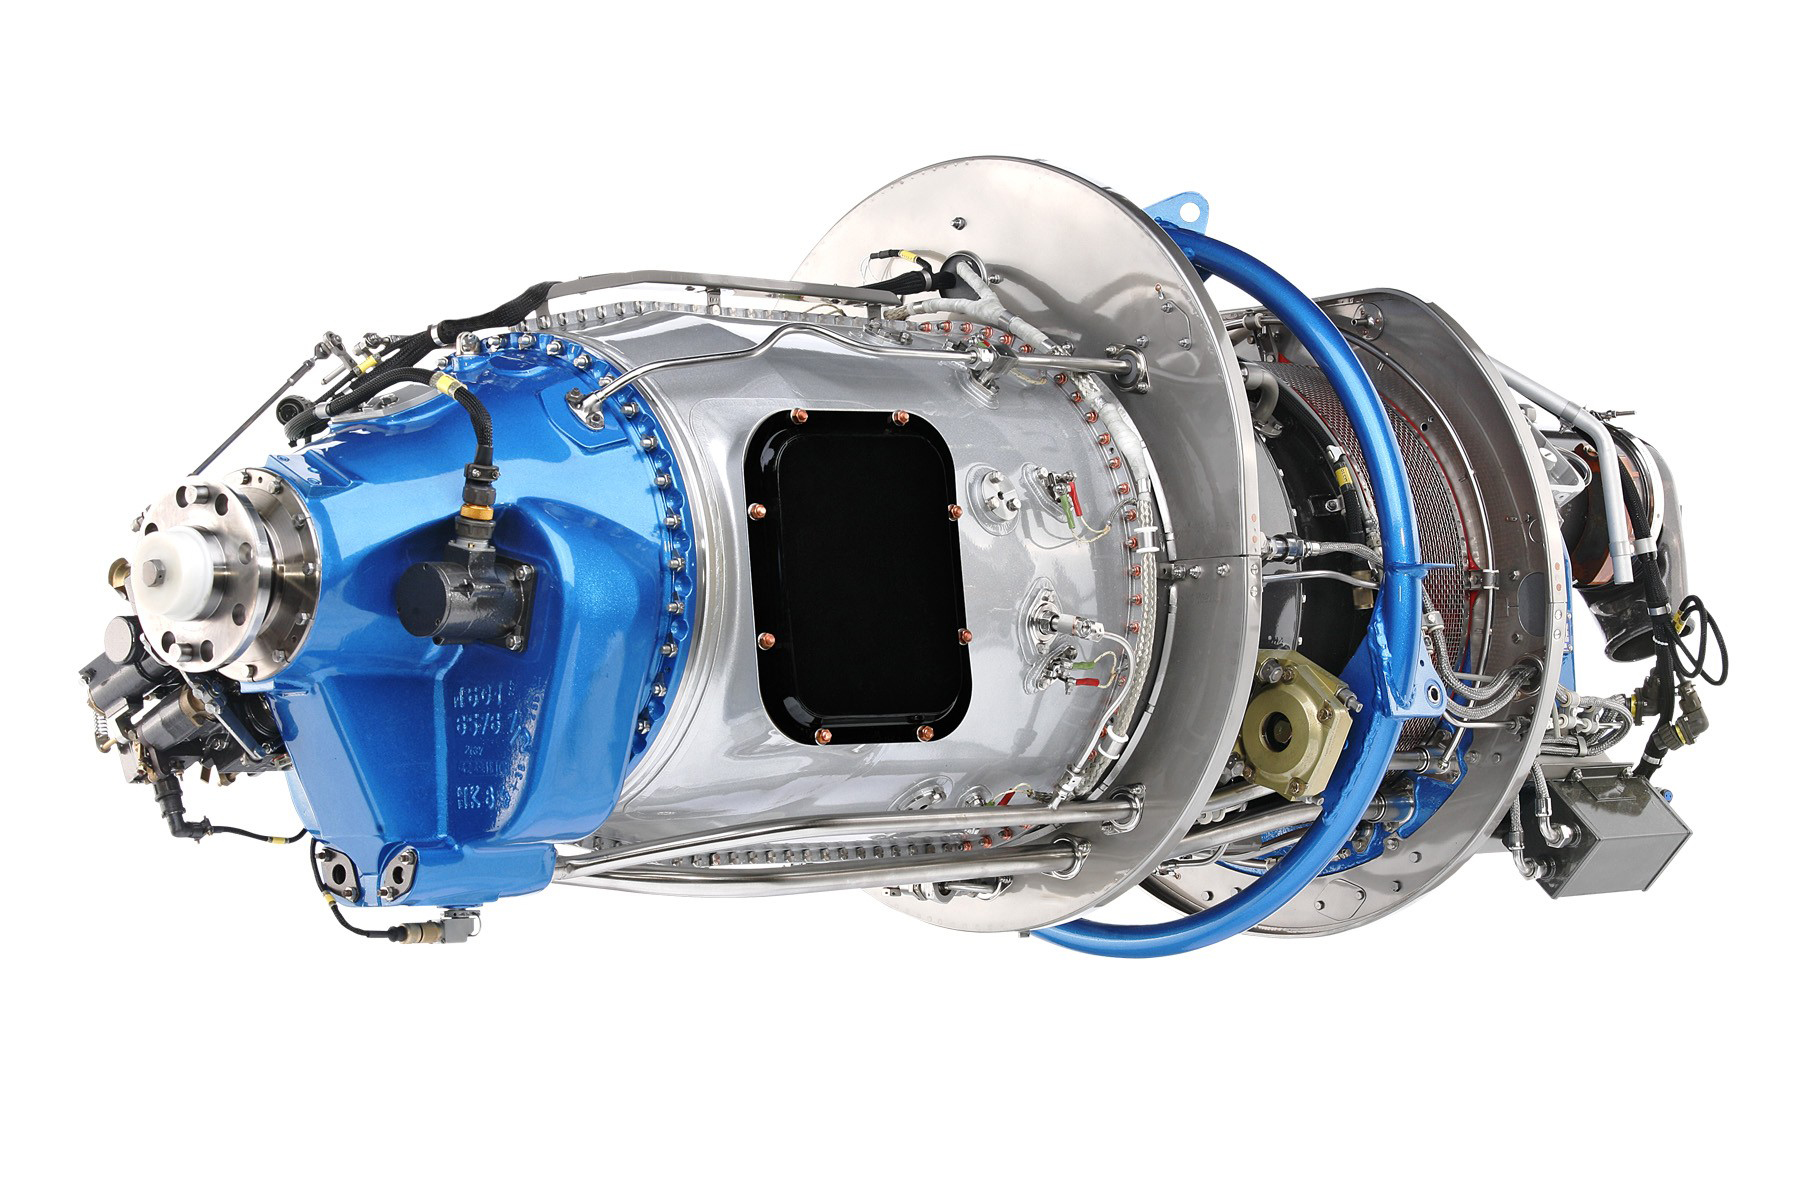 GE H Series Turboprop Engine